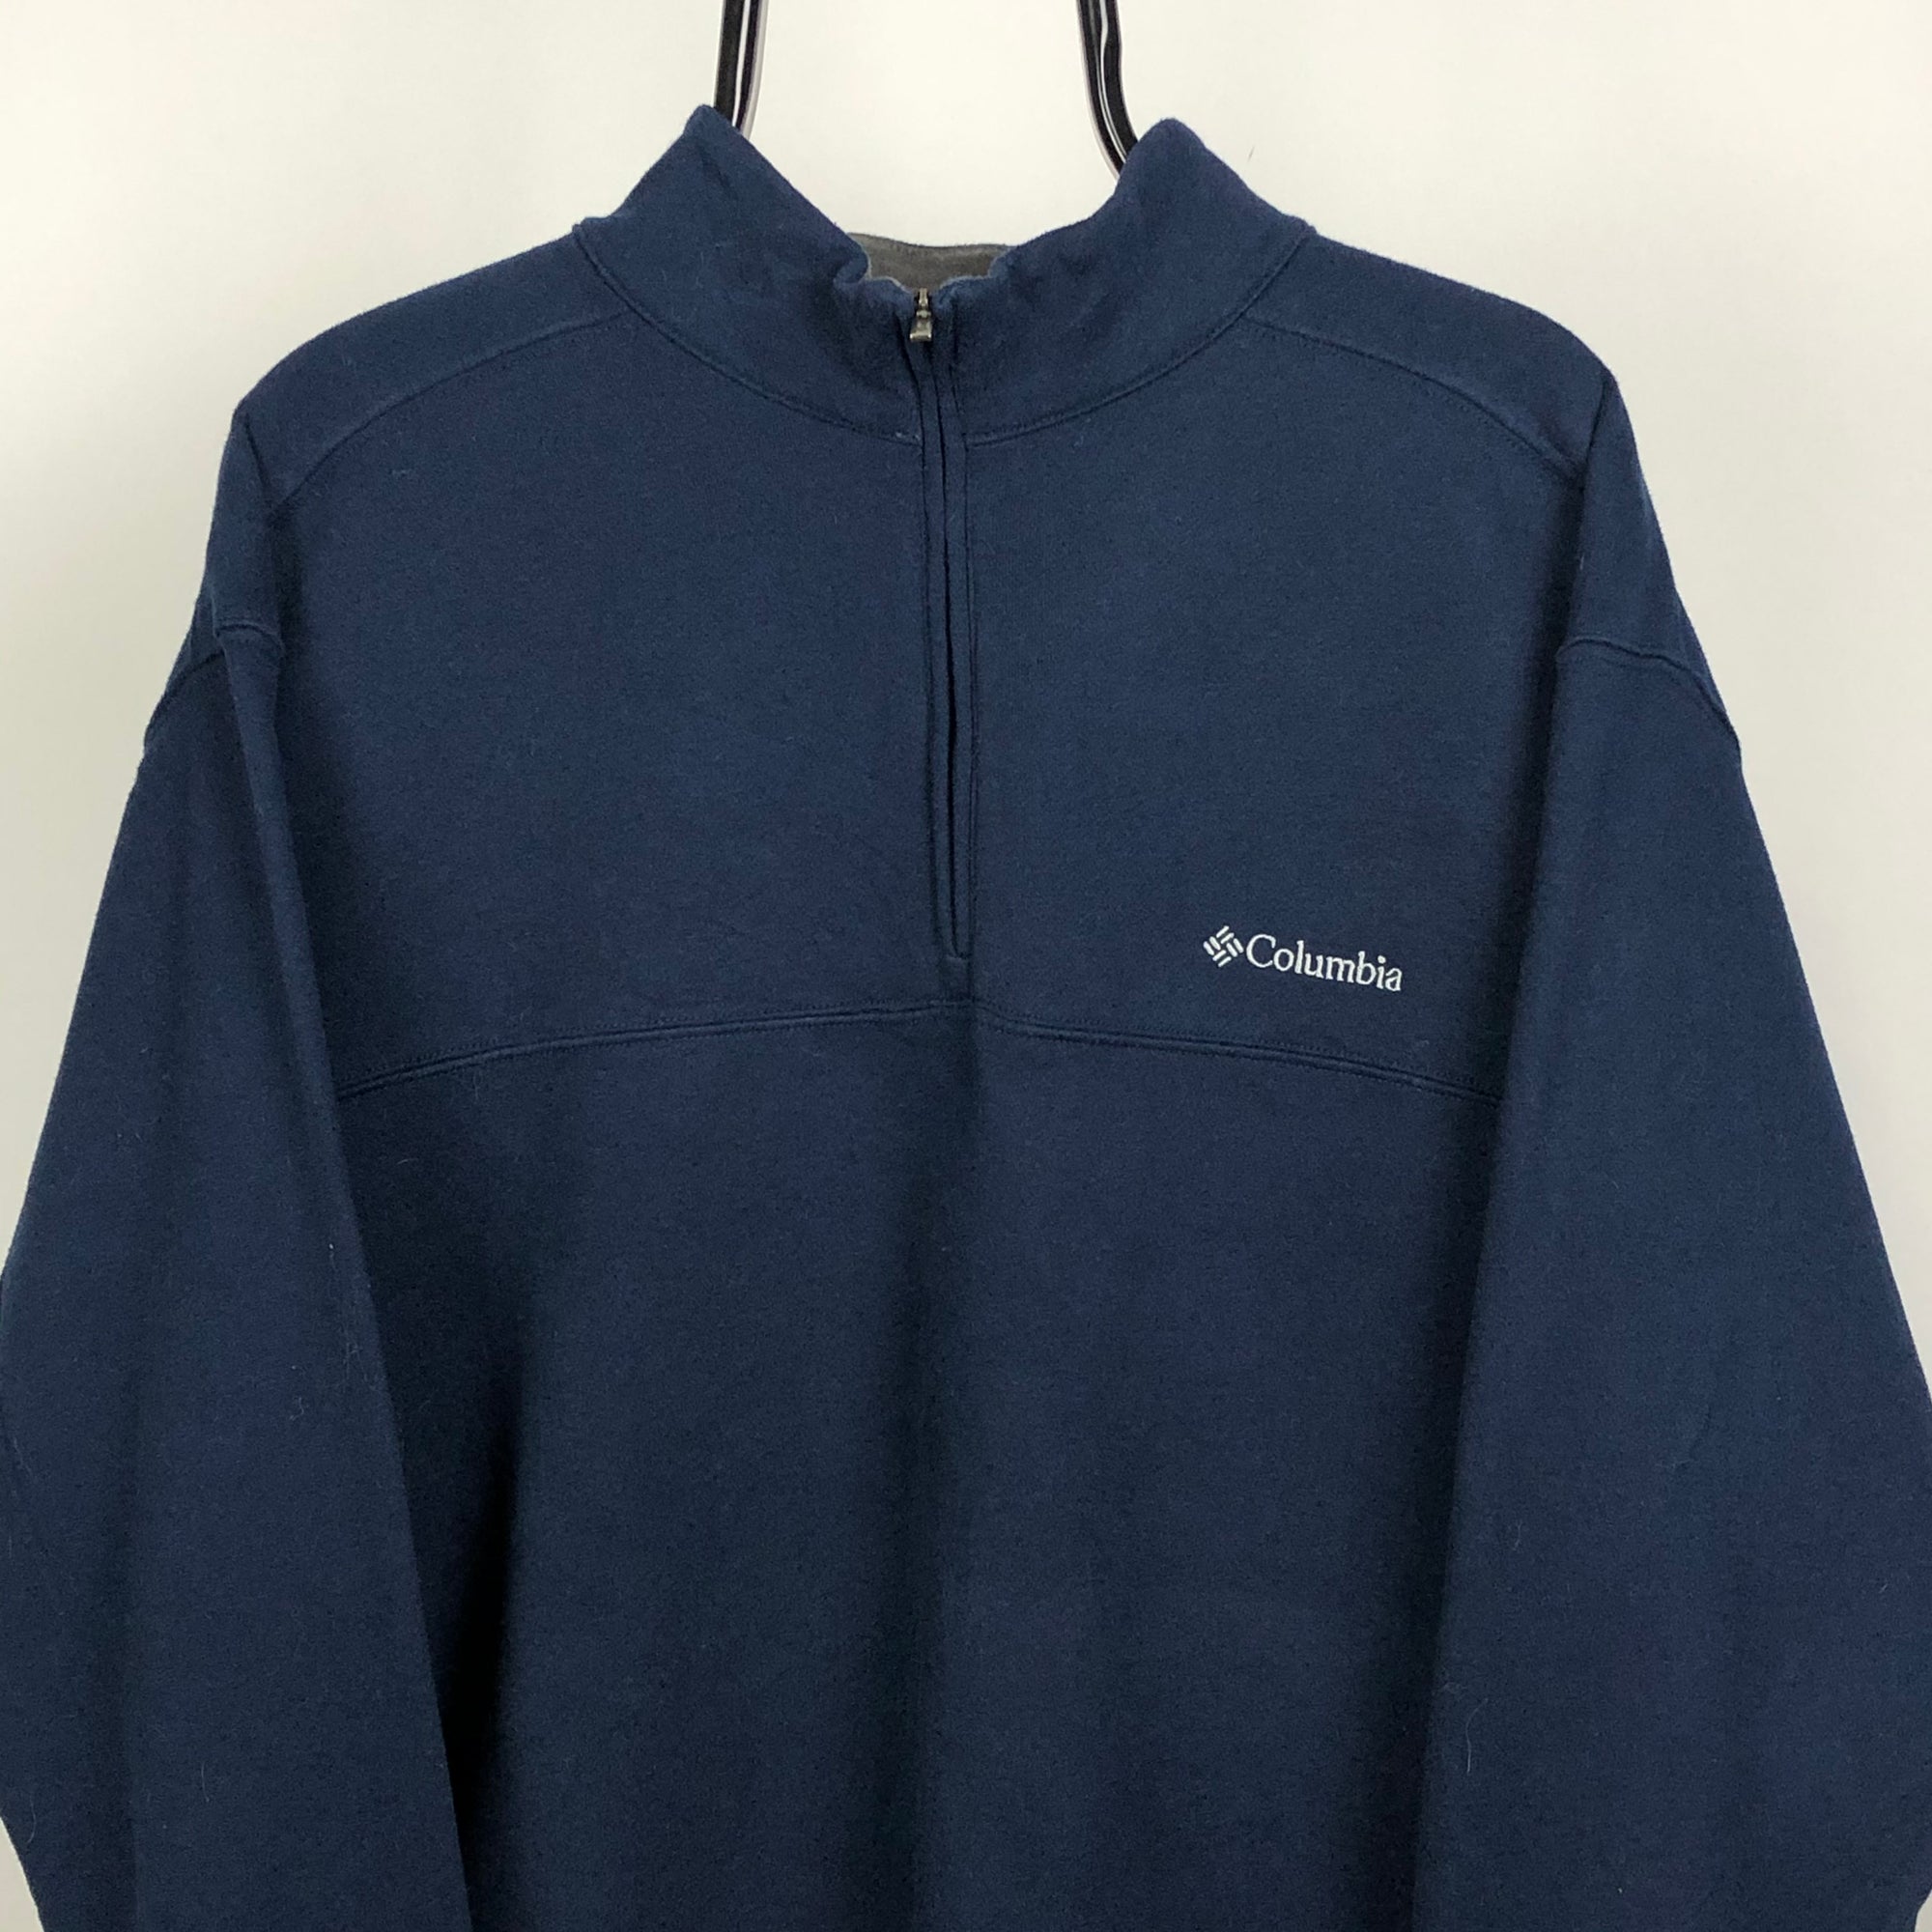 Columbia 1/4 Zip Sweatshirt in Navy - Men's XL/Women's XXL